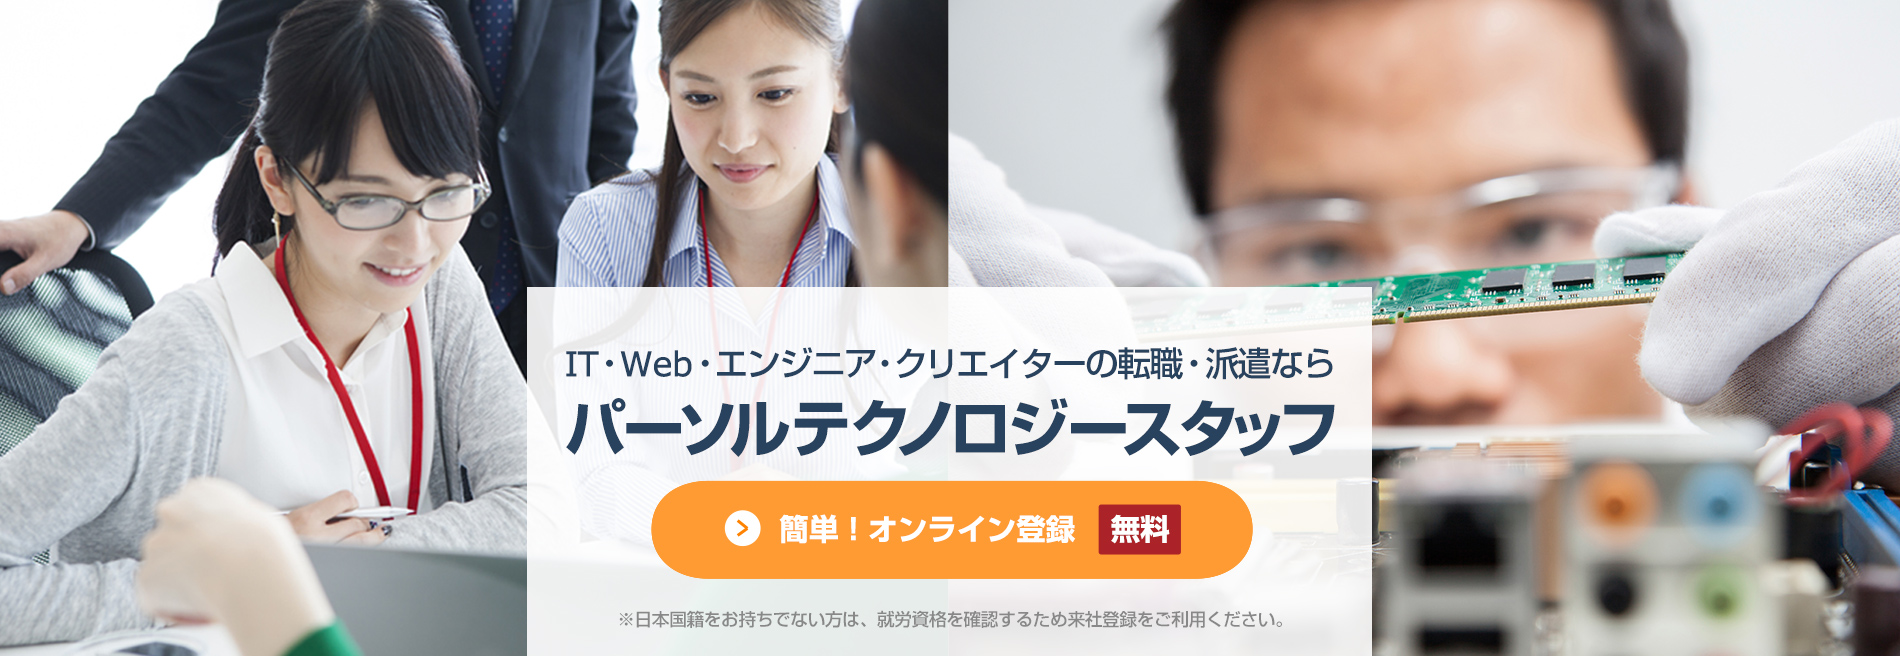 簡単！オンライン登録[無料]、IT・Web・エンジニア・クリエイターの派遣ならパーソルテクノロジースタッフのエンジニア派遣、※日本国籍をお持ちでない方は、就労資格を確認するため来社登録をご利用ください。